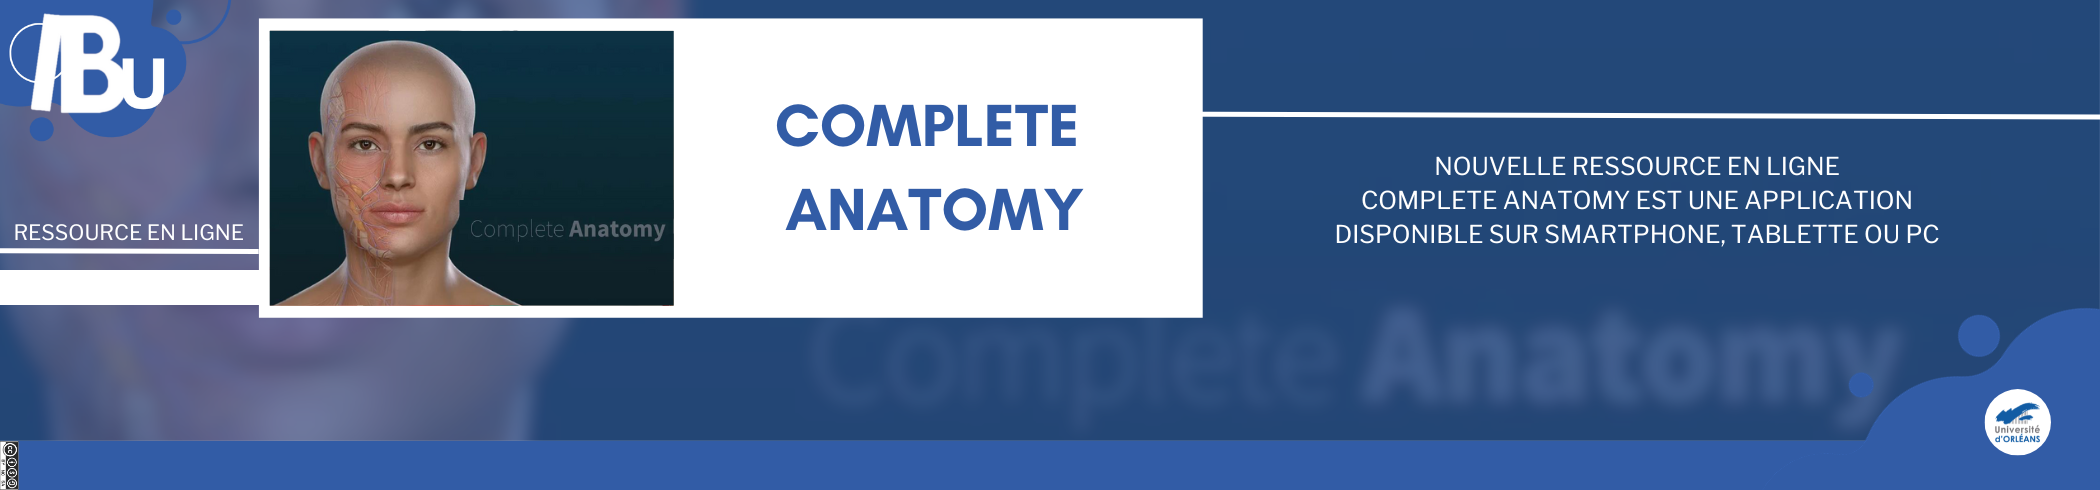 texte Complete anatomy avec logo de la base